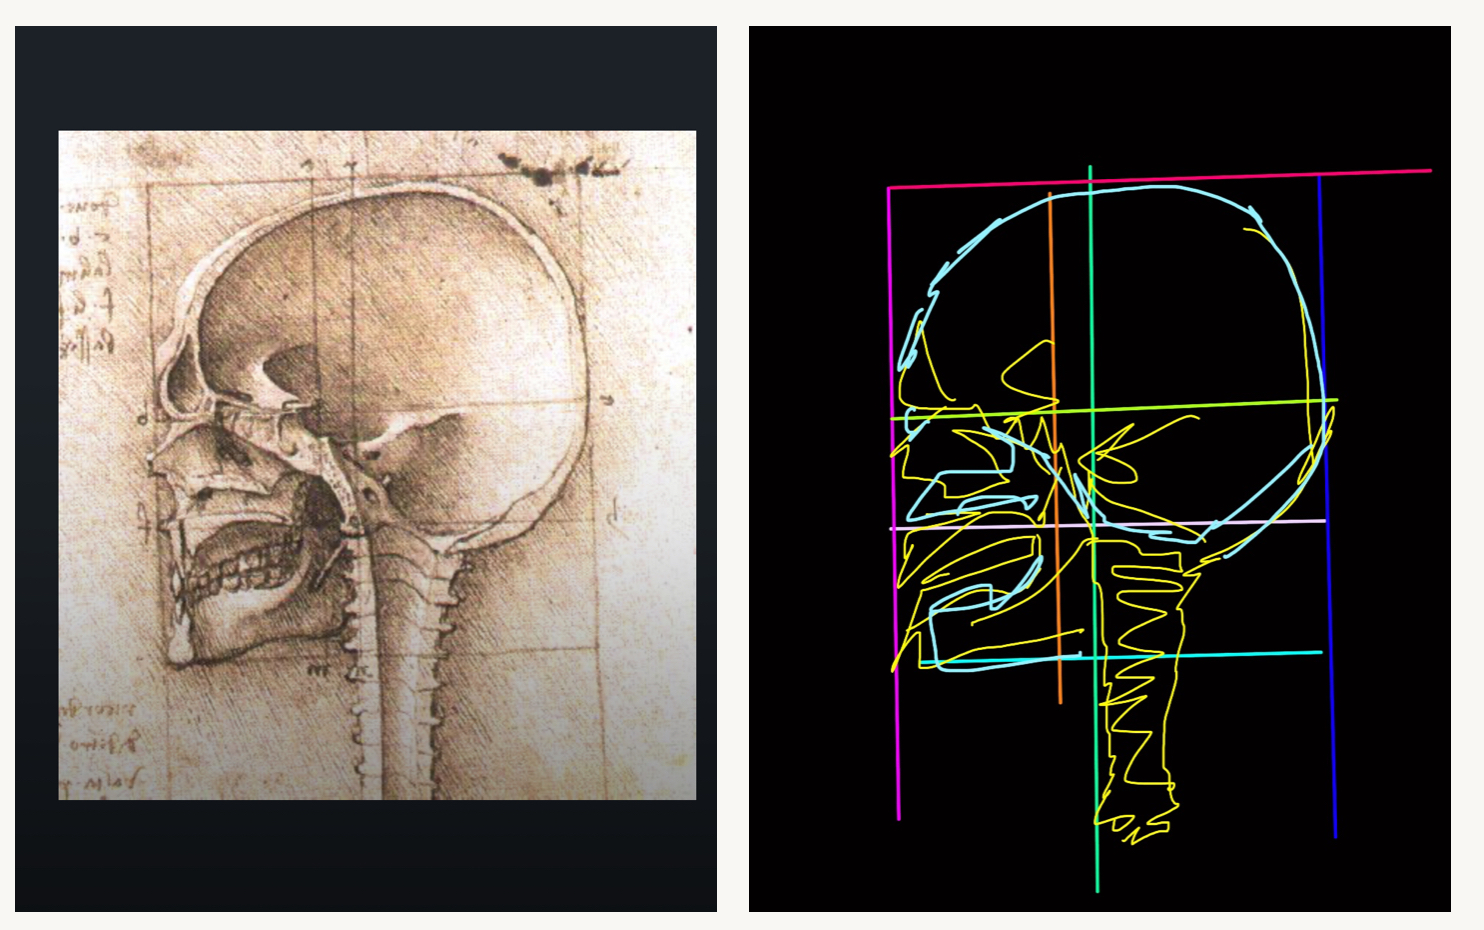 Skull da Vinci